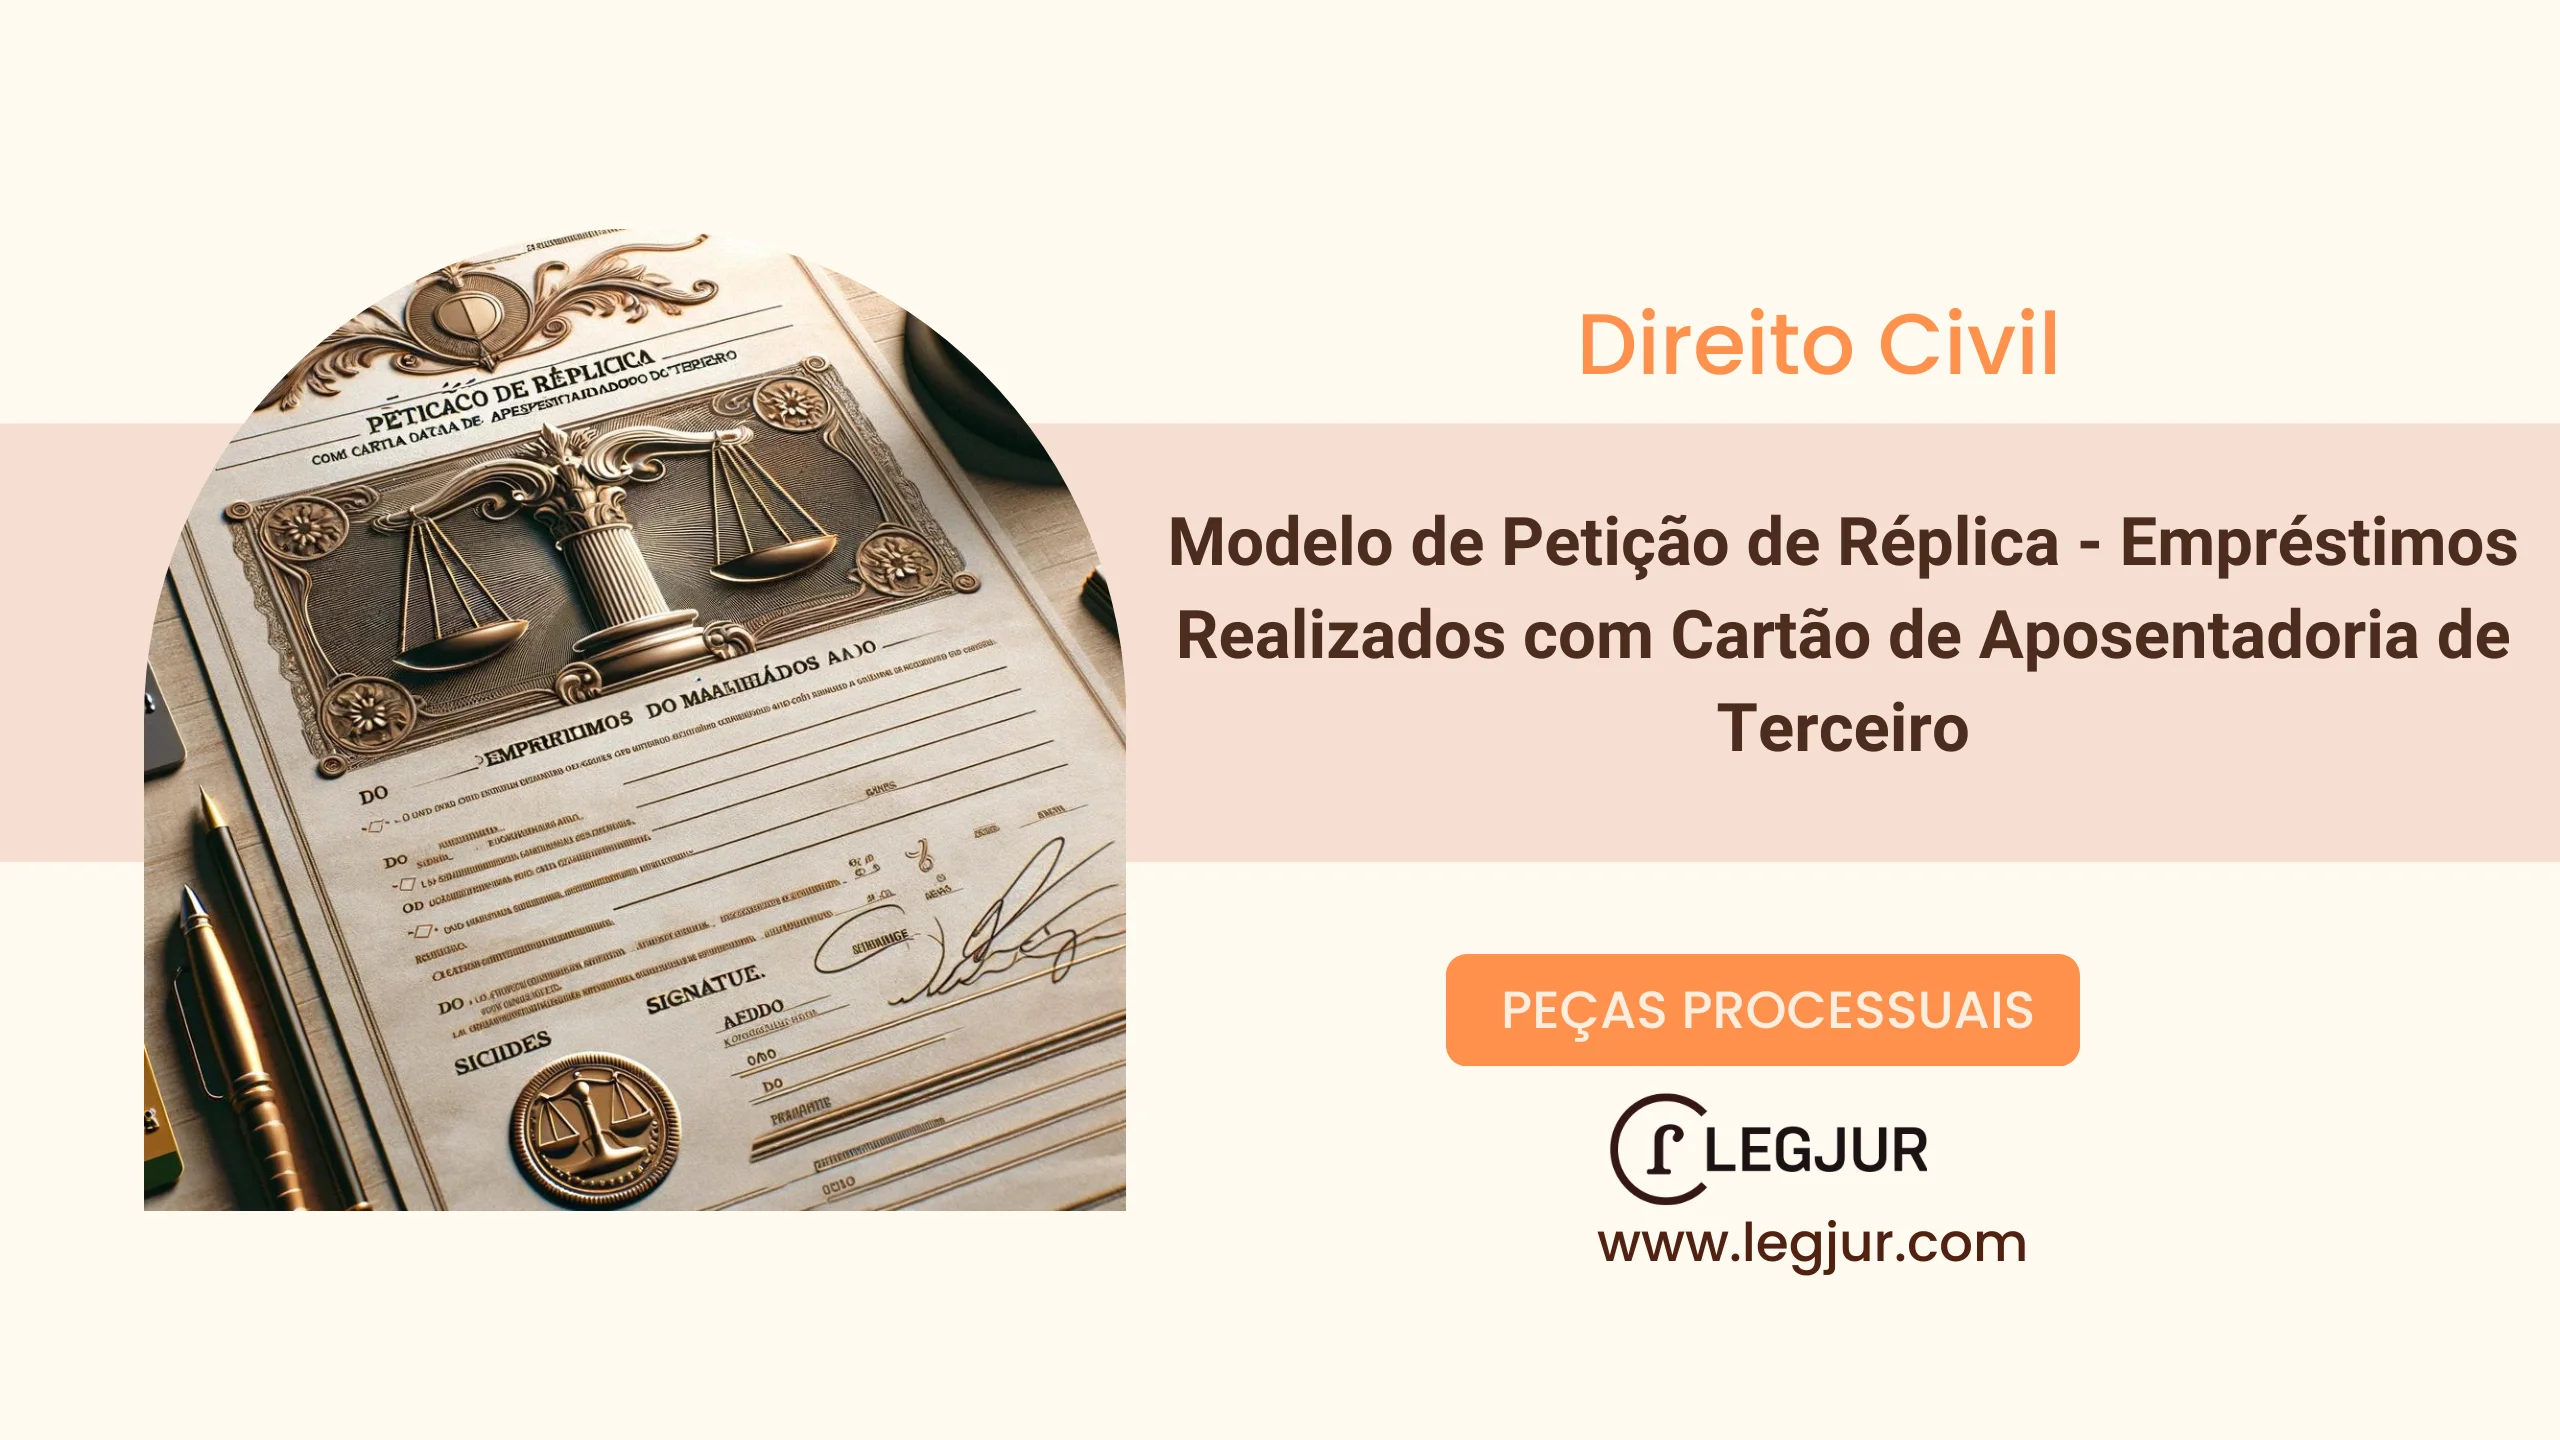 Modelo de Petição de Réplica - Empréstimos Realizados com Cartão de Aposentadoria de Terceiro